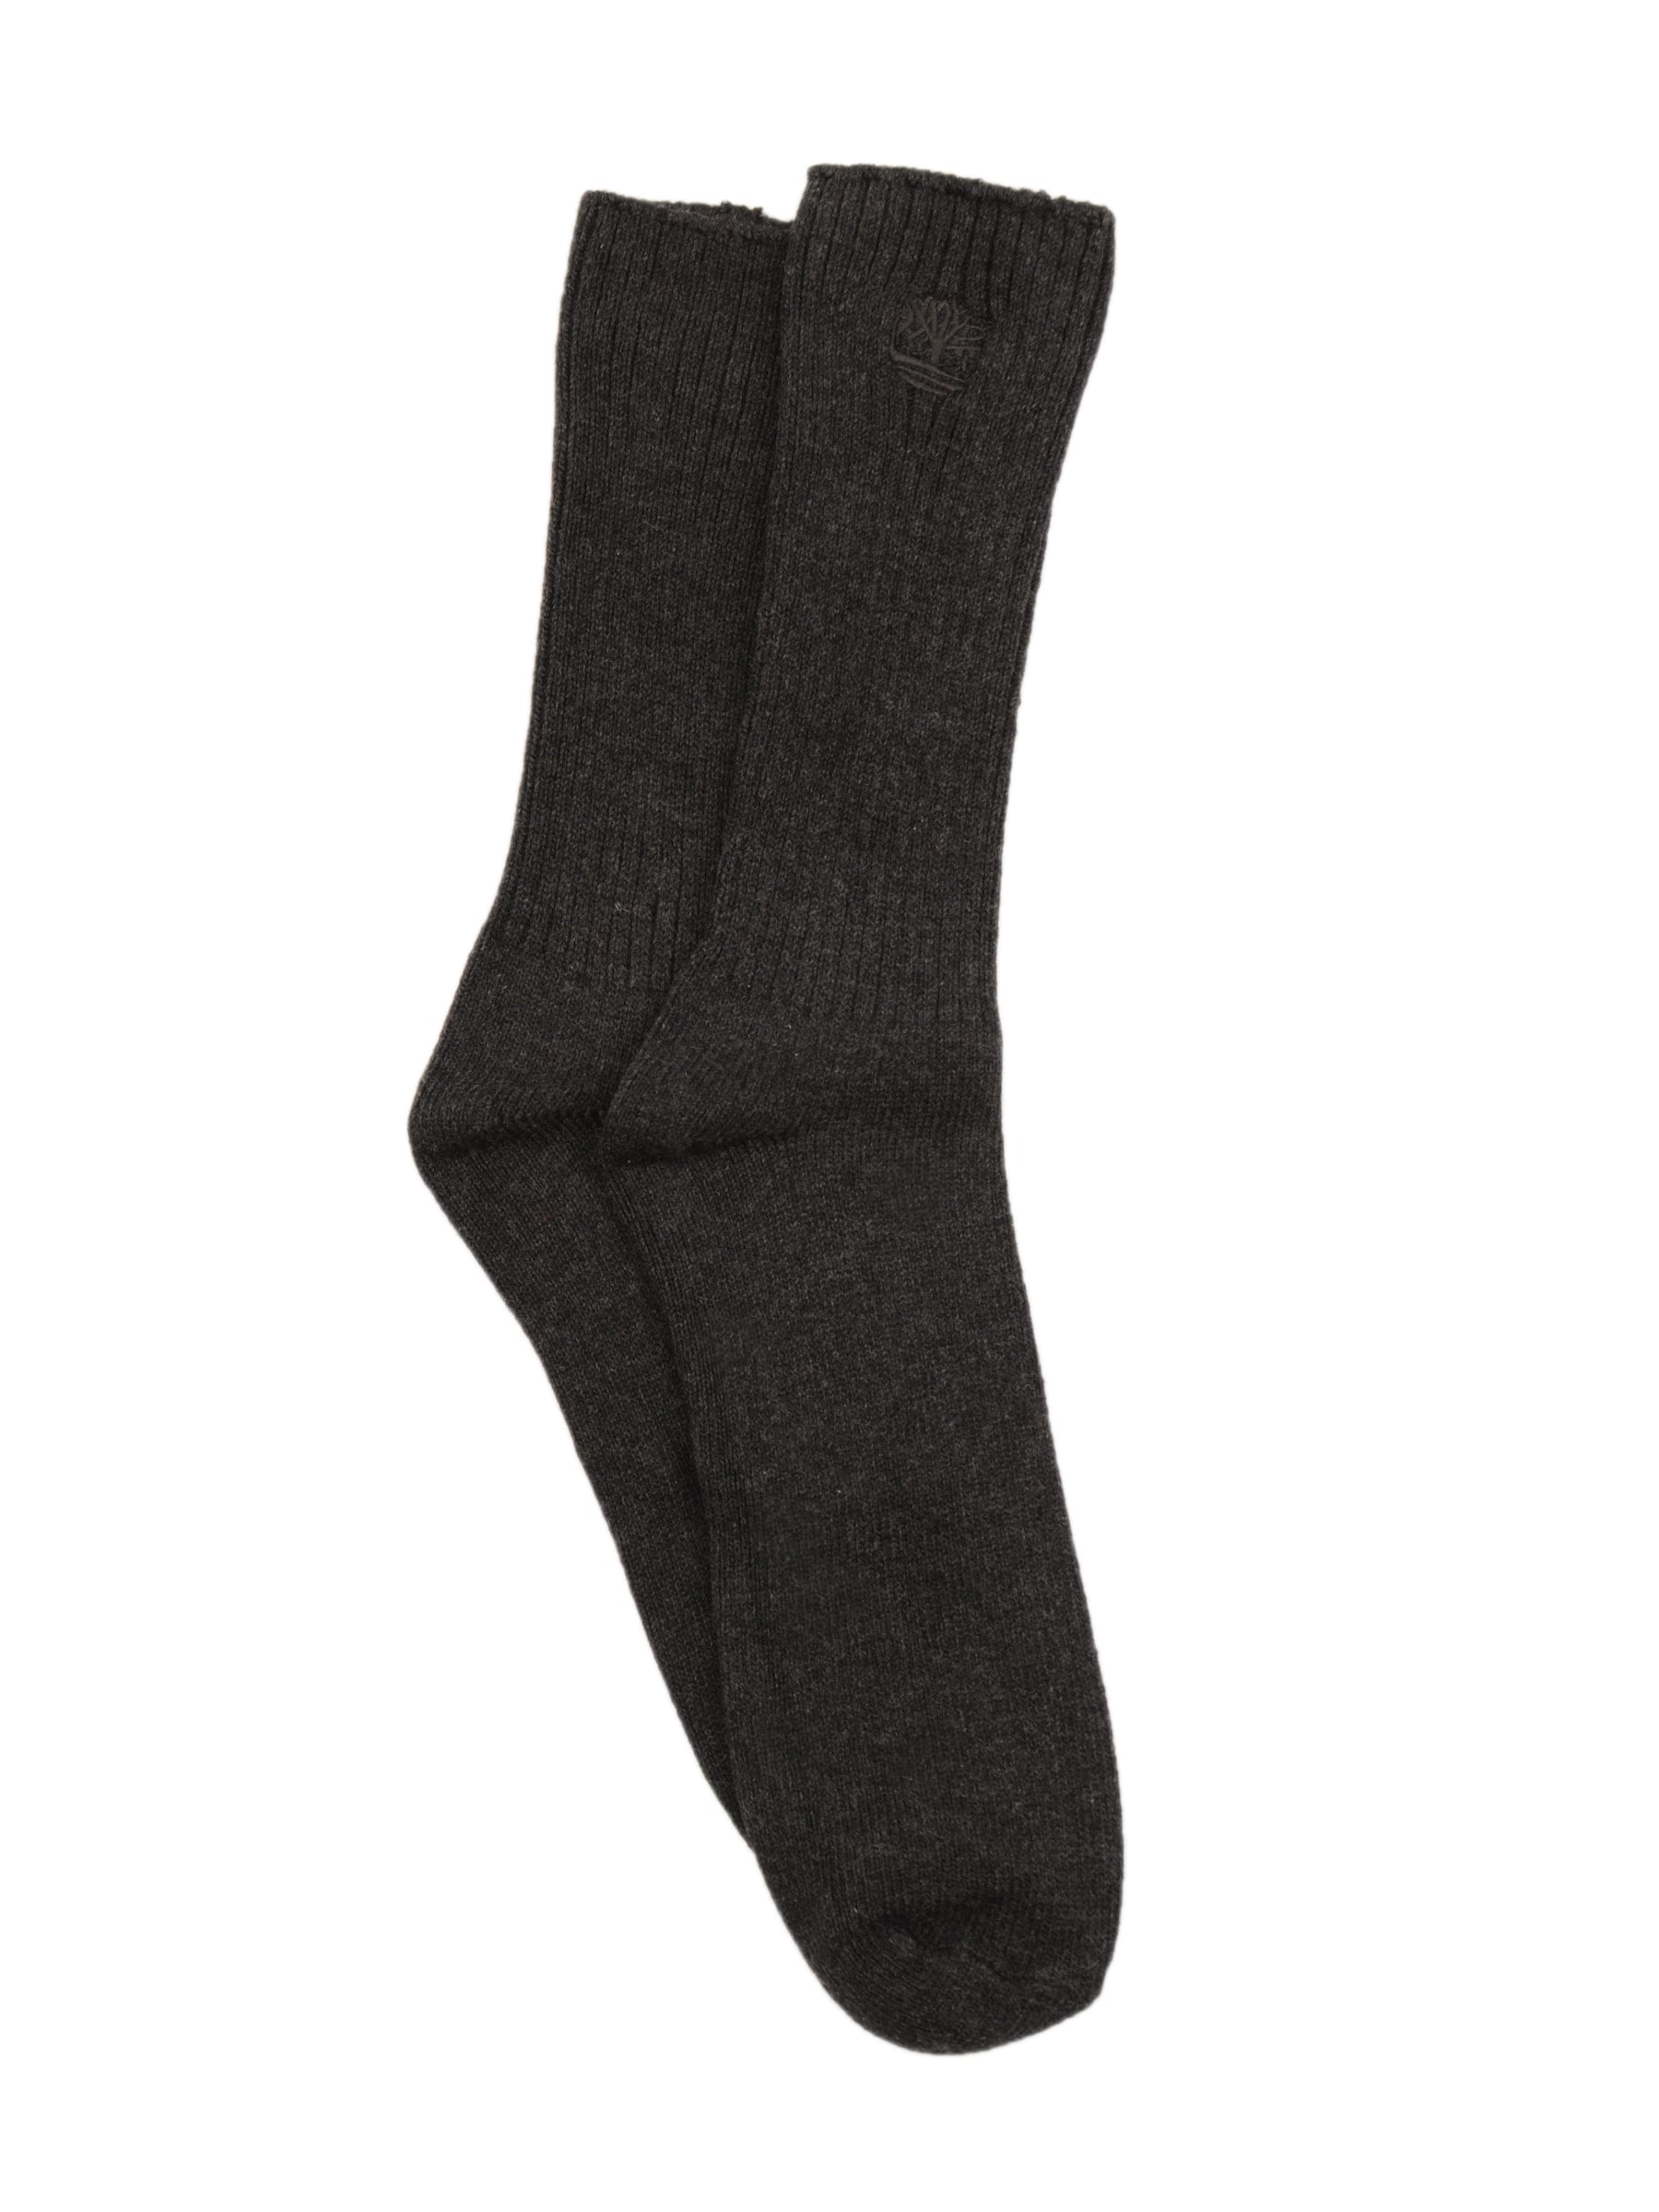 Timberland Men Casual Grey Socks